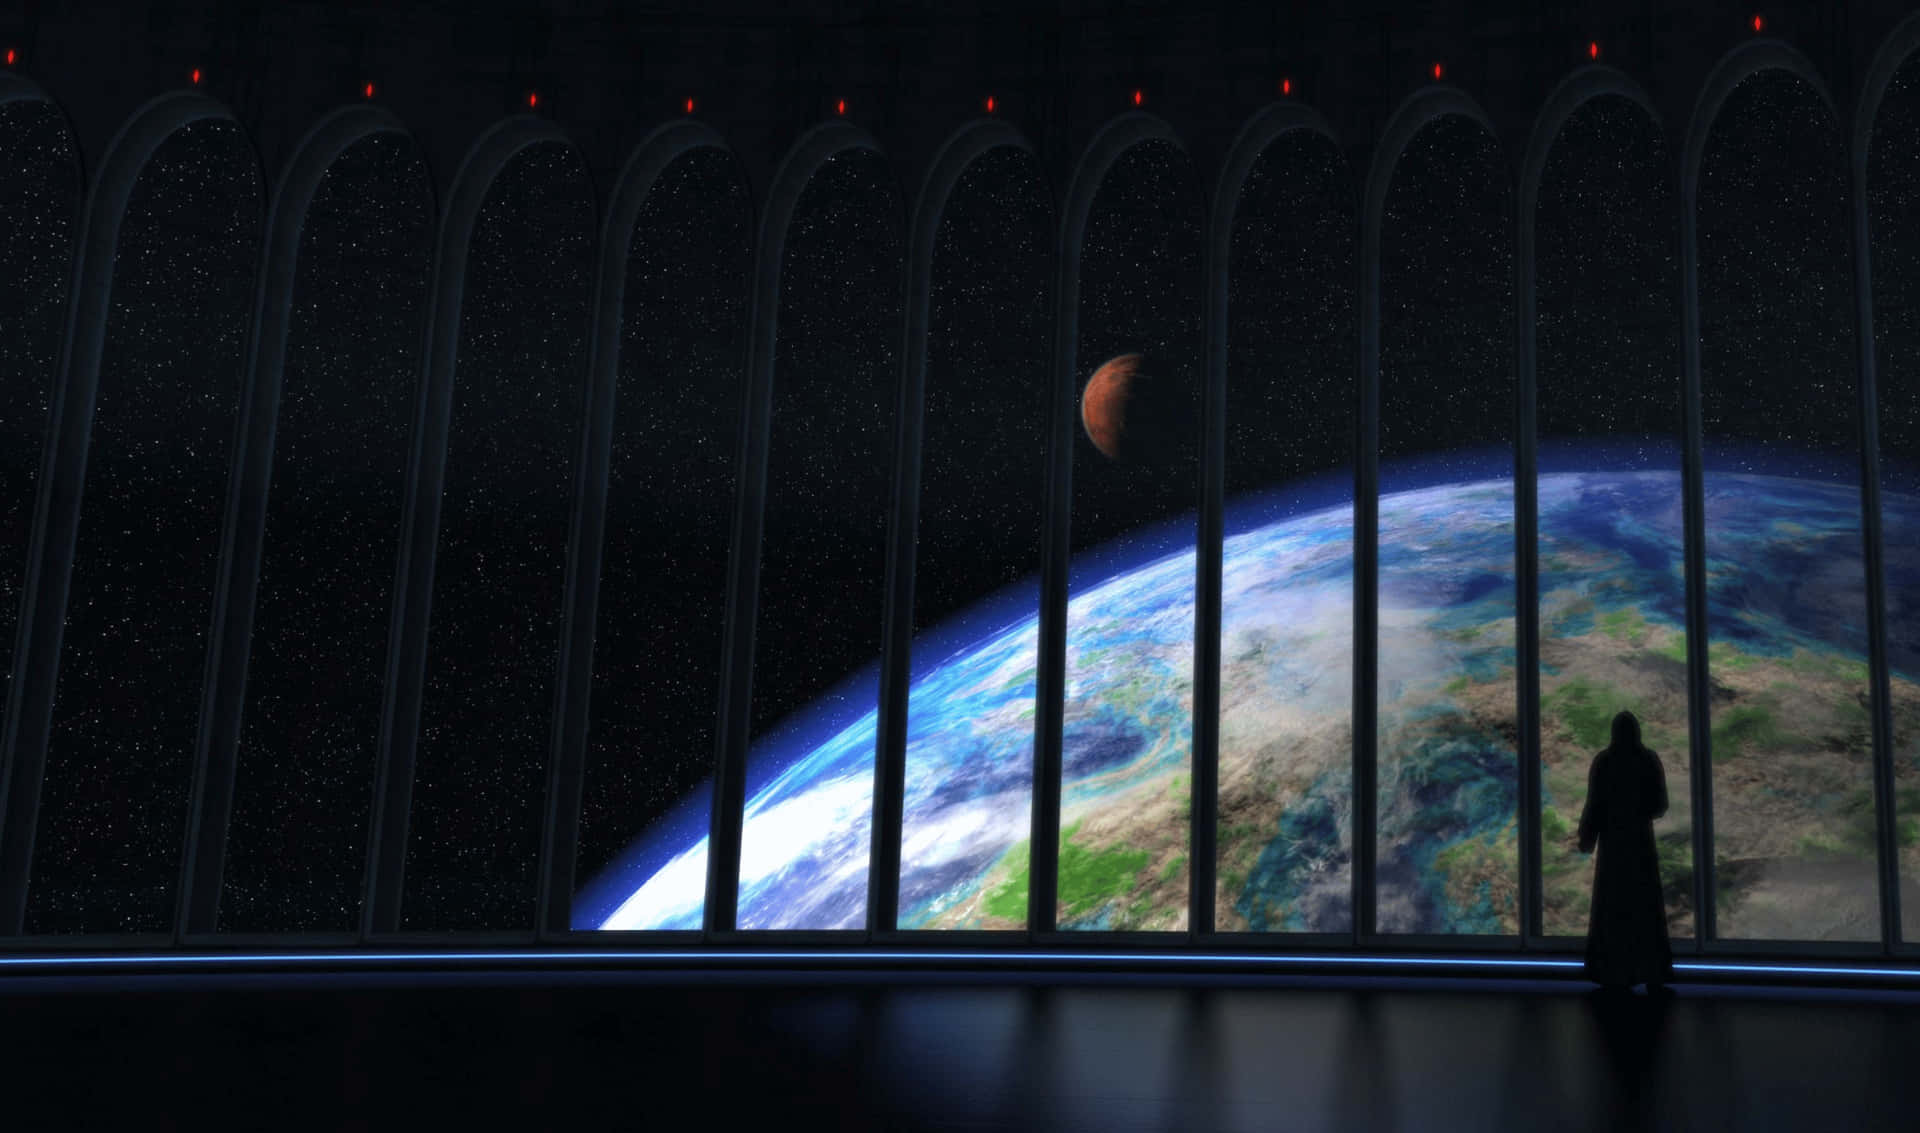 Astronaveche Osserva La Terra - Sfondo Per Monitor 2440x1440